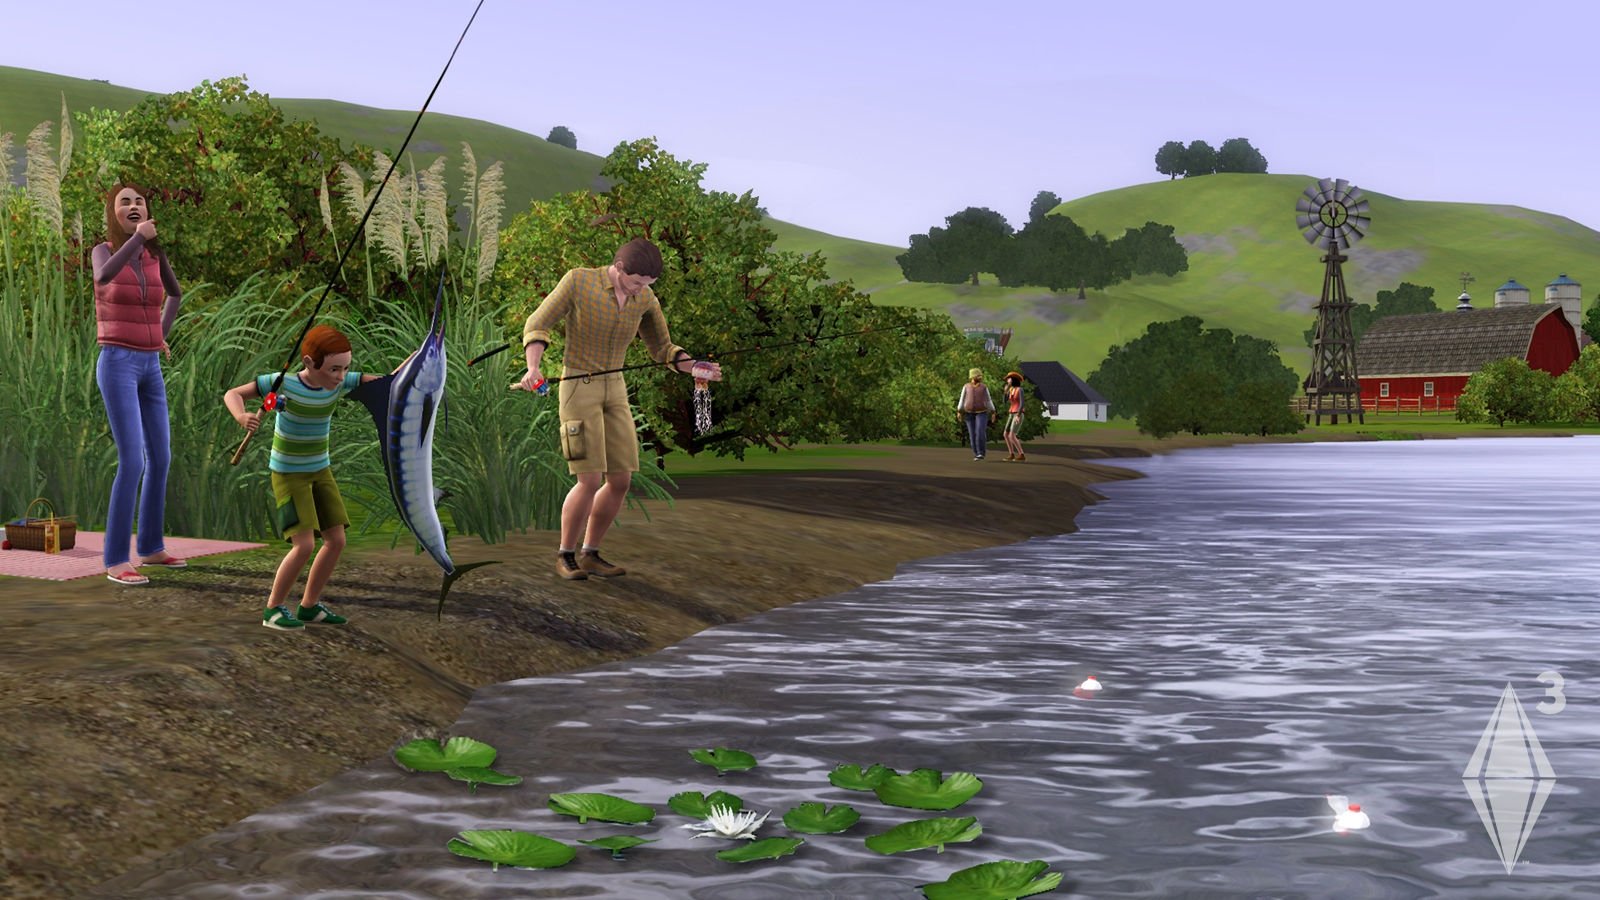 The Sims 3 Mod Apk ApkRoutecom